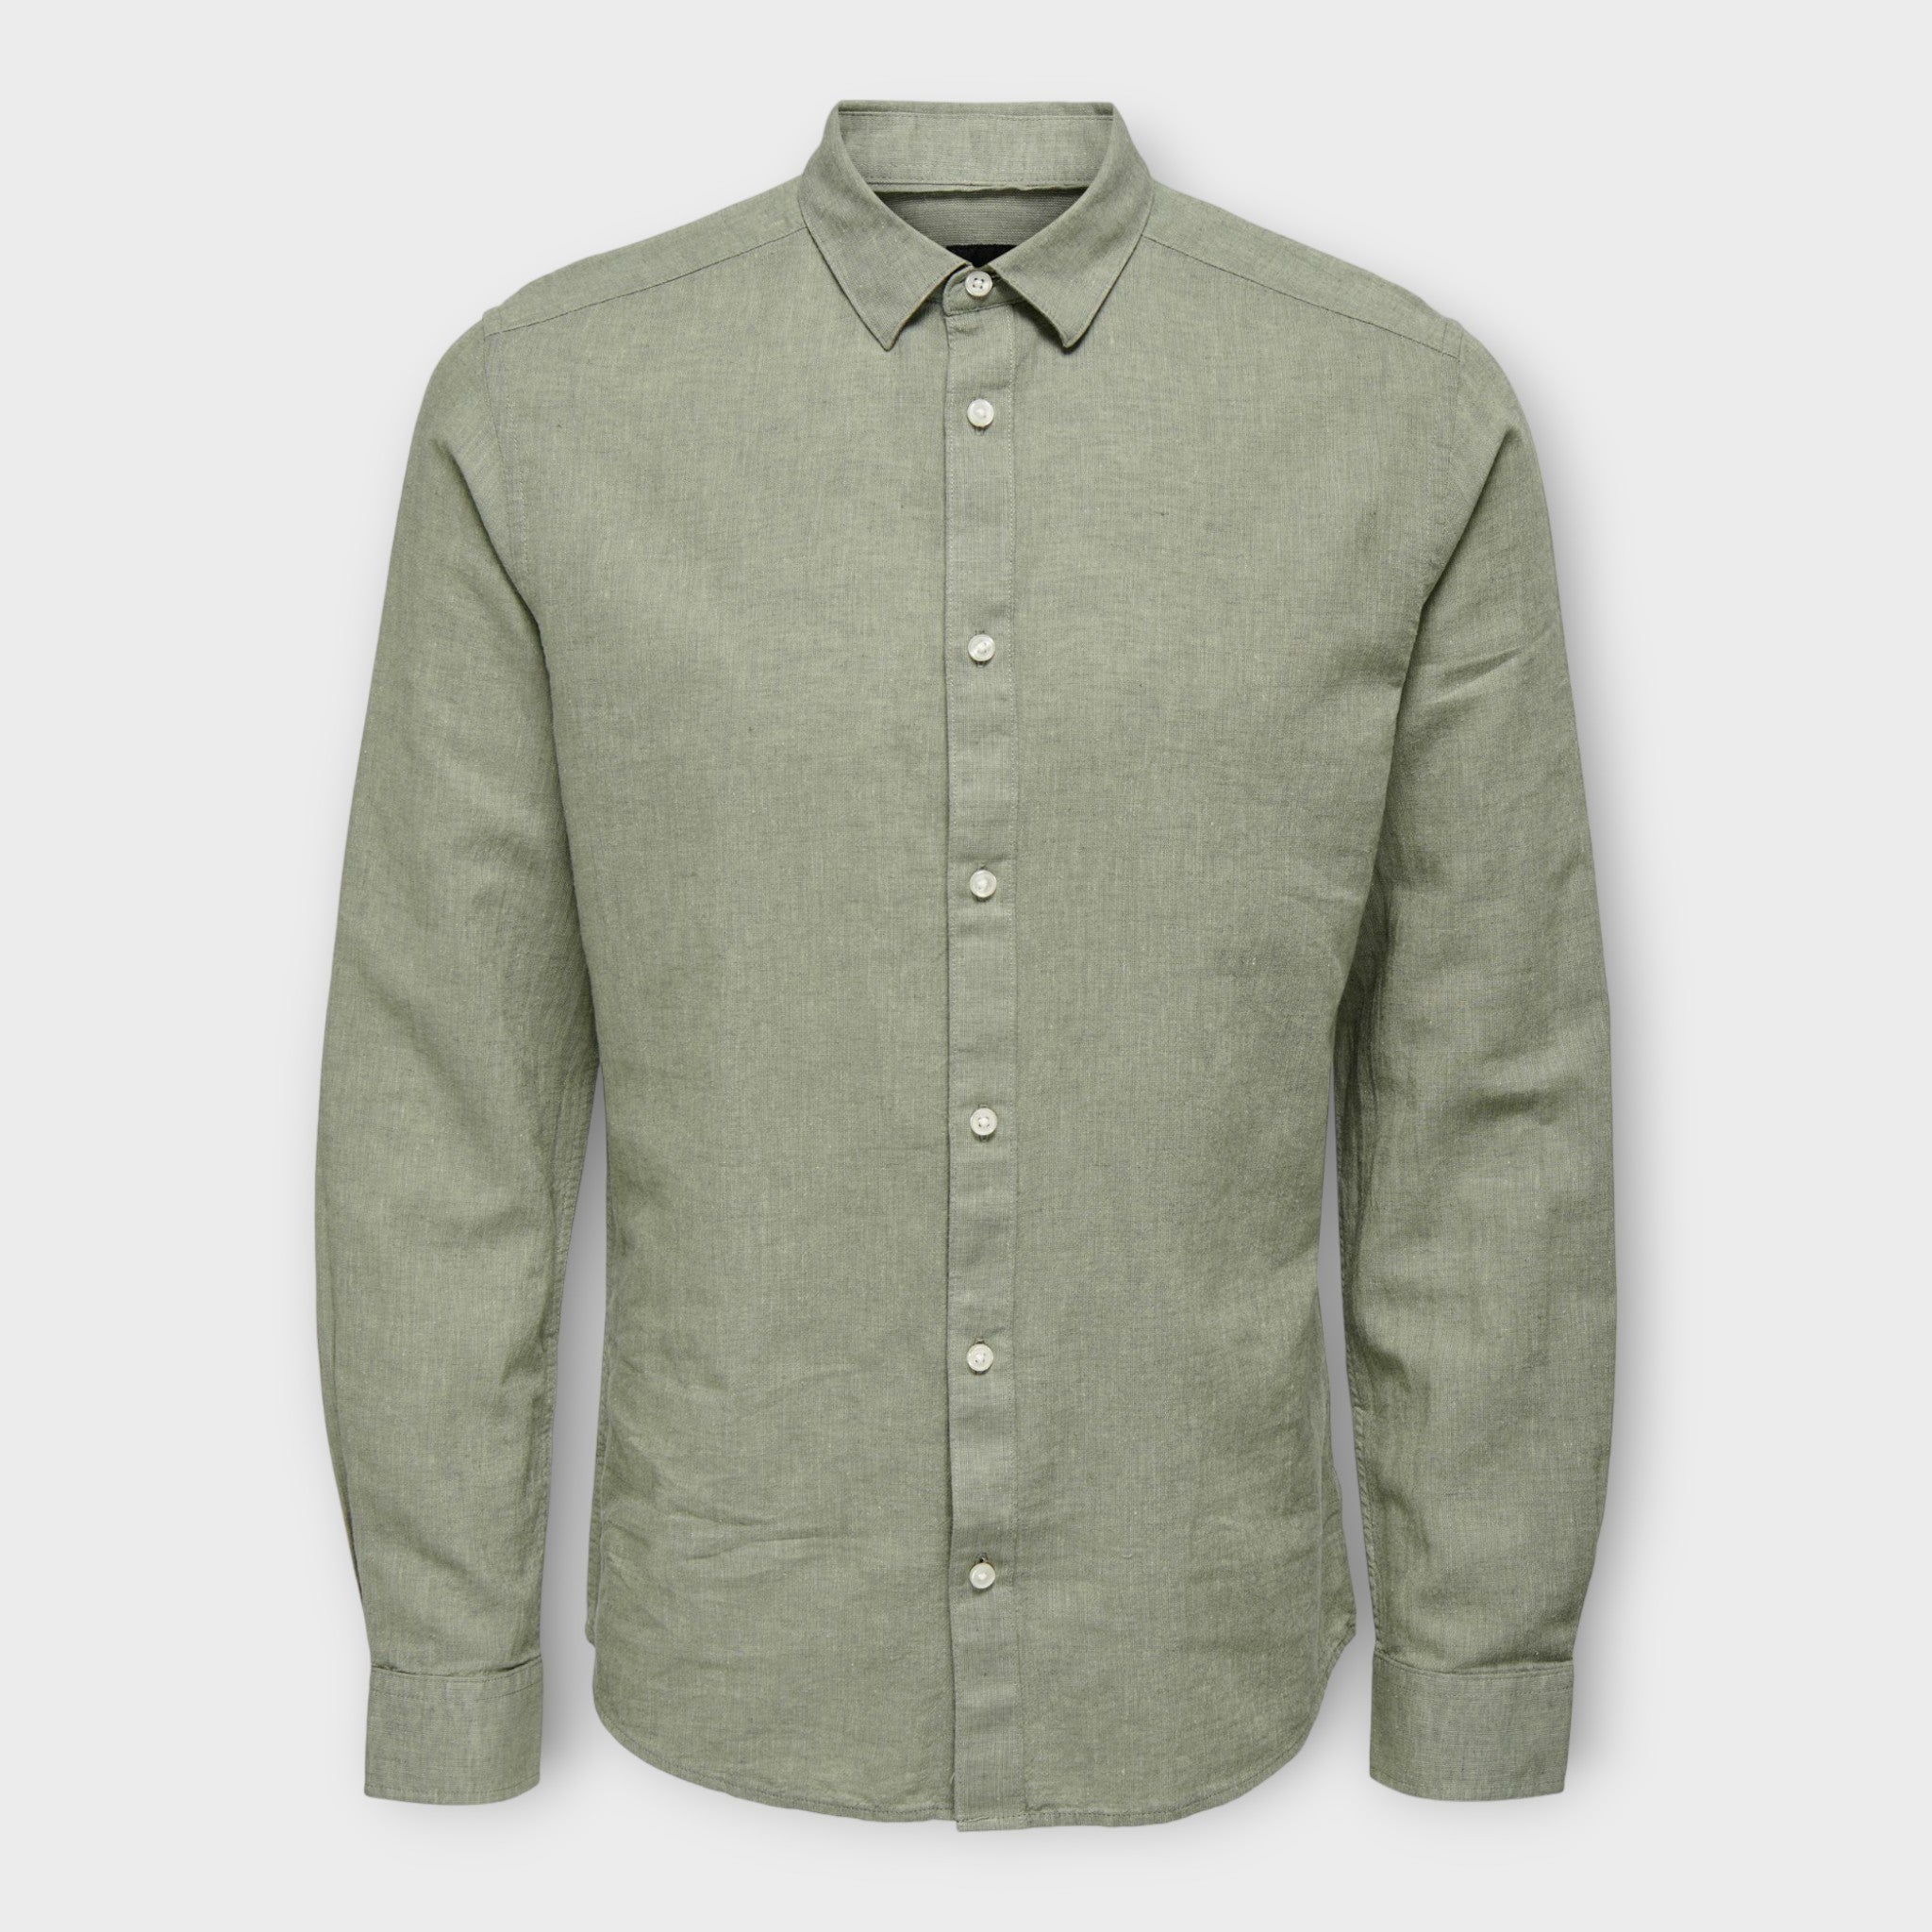 Only and Sons Caiden  LS Solid Linen Shirt  Swamp, langærmet grøn hørskjorte til mænd. Her set forfra.